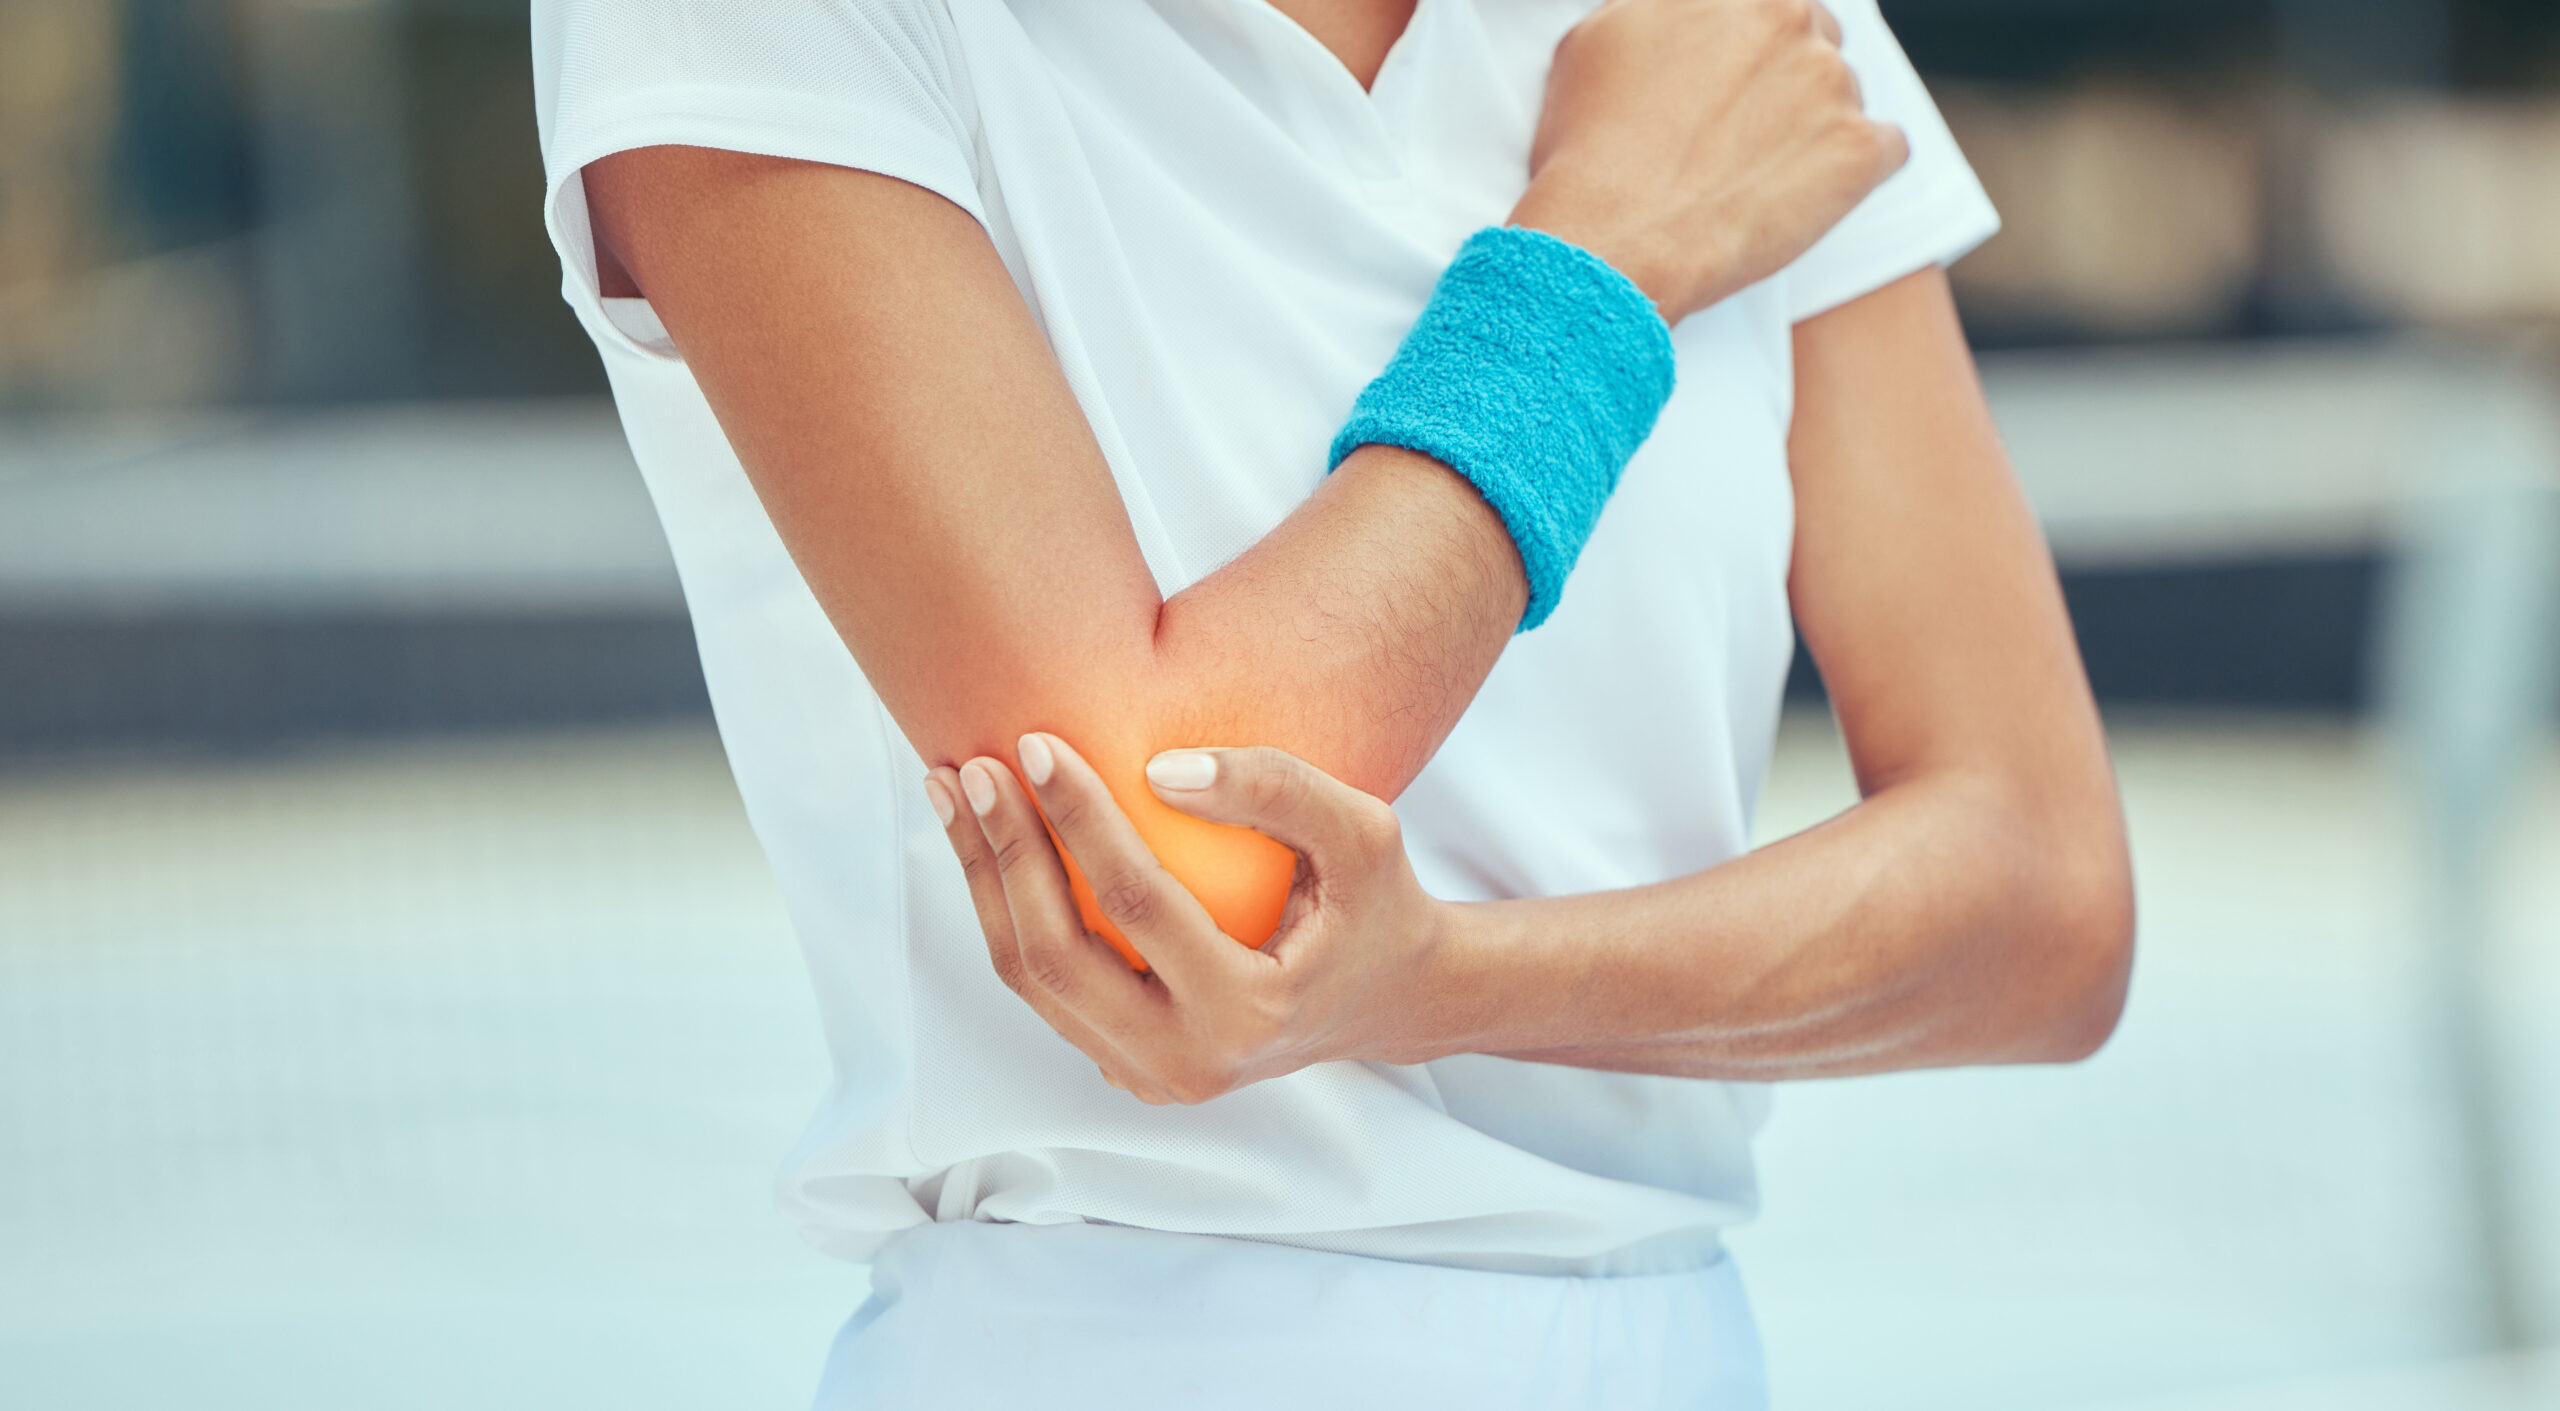 肘の痛みは日常生活や運動の制限を引き起こすことがあります。
肘は日常生活でもよく使うため一度炎症を起こすと治りにくく、注意が必要です。